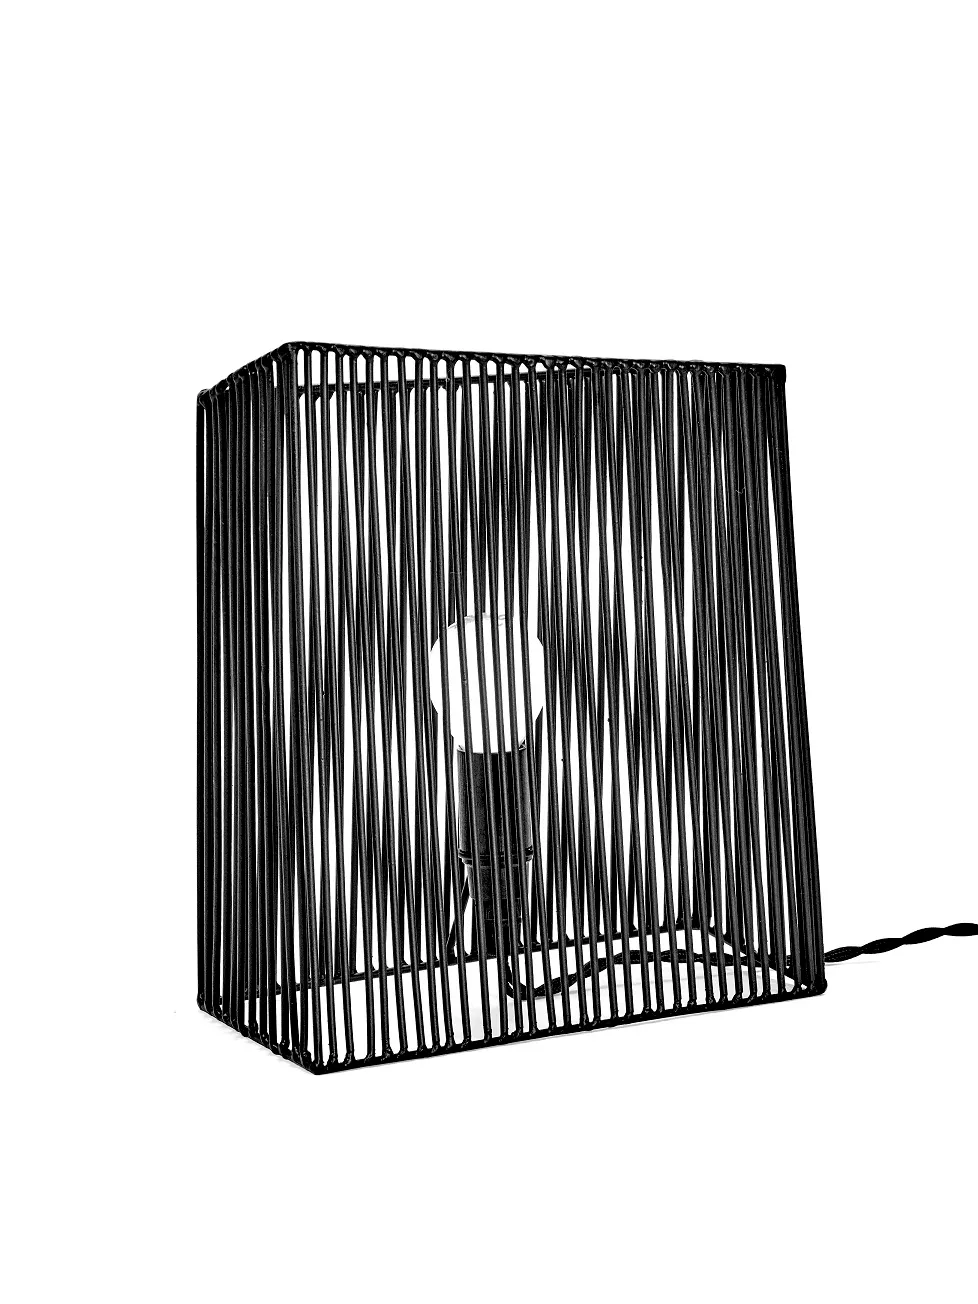 Wall/Table Lamp L Ombre Black L 23.5 W 21 H 26CM Antonino Sciortino by Serax